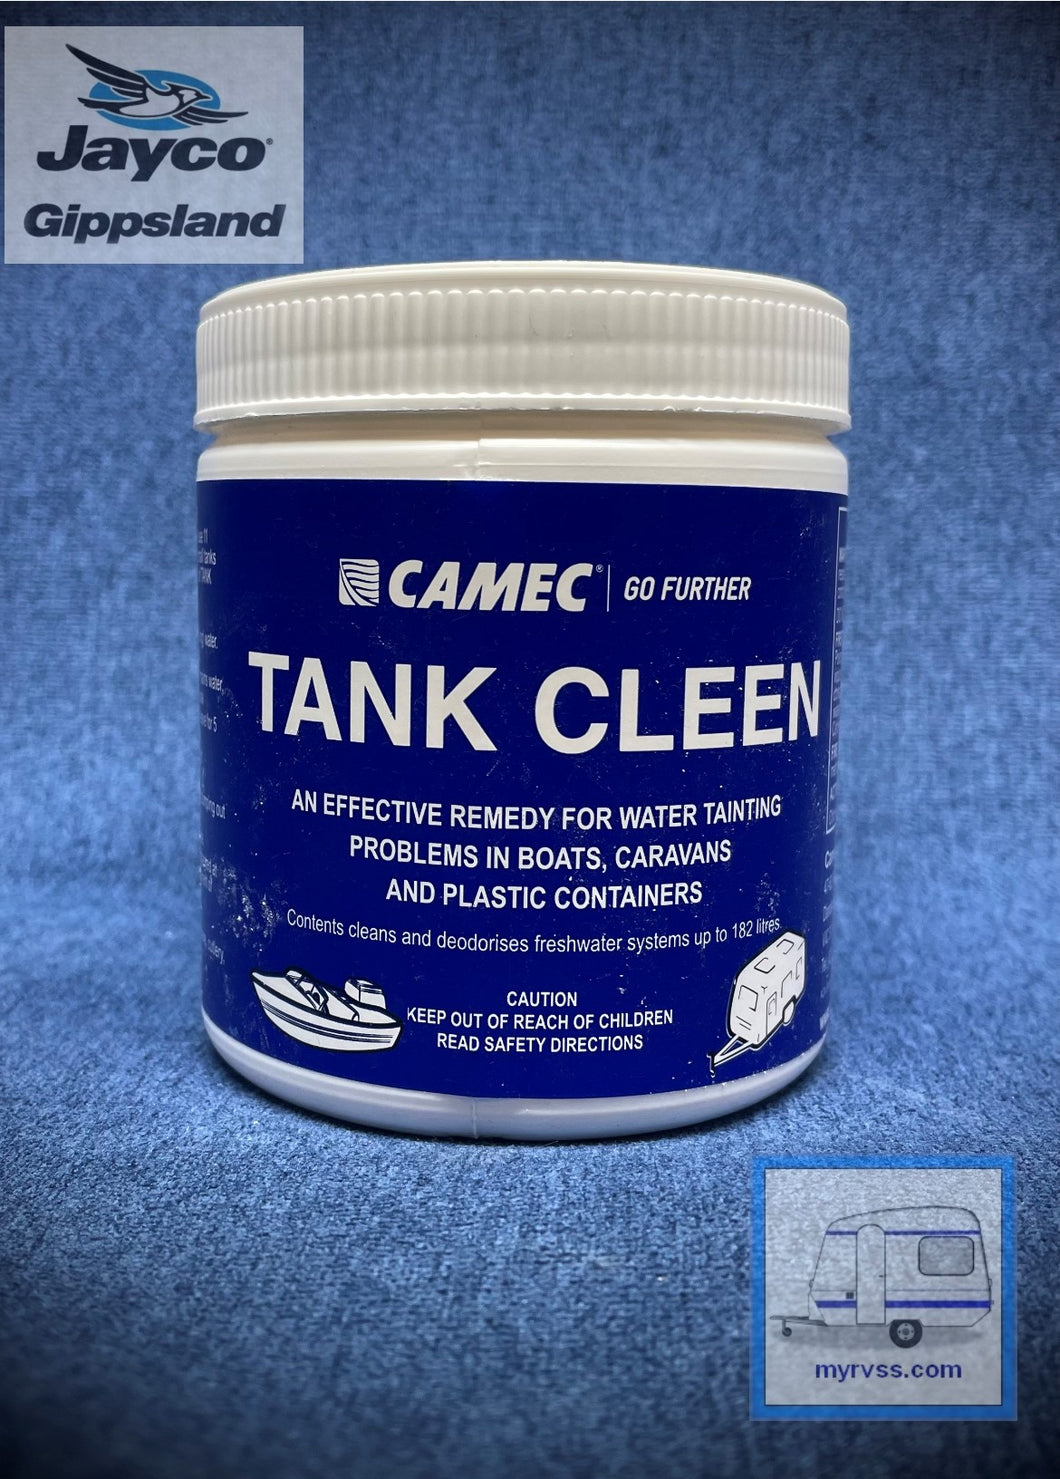 Camec Tank Cleen